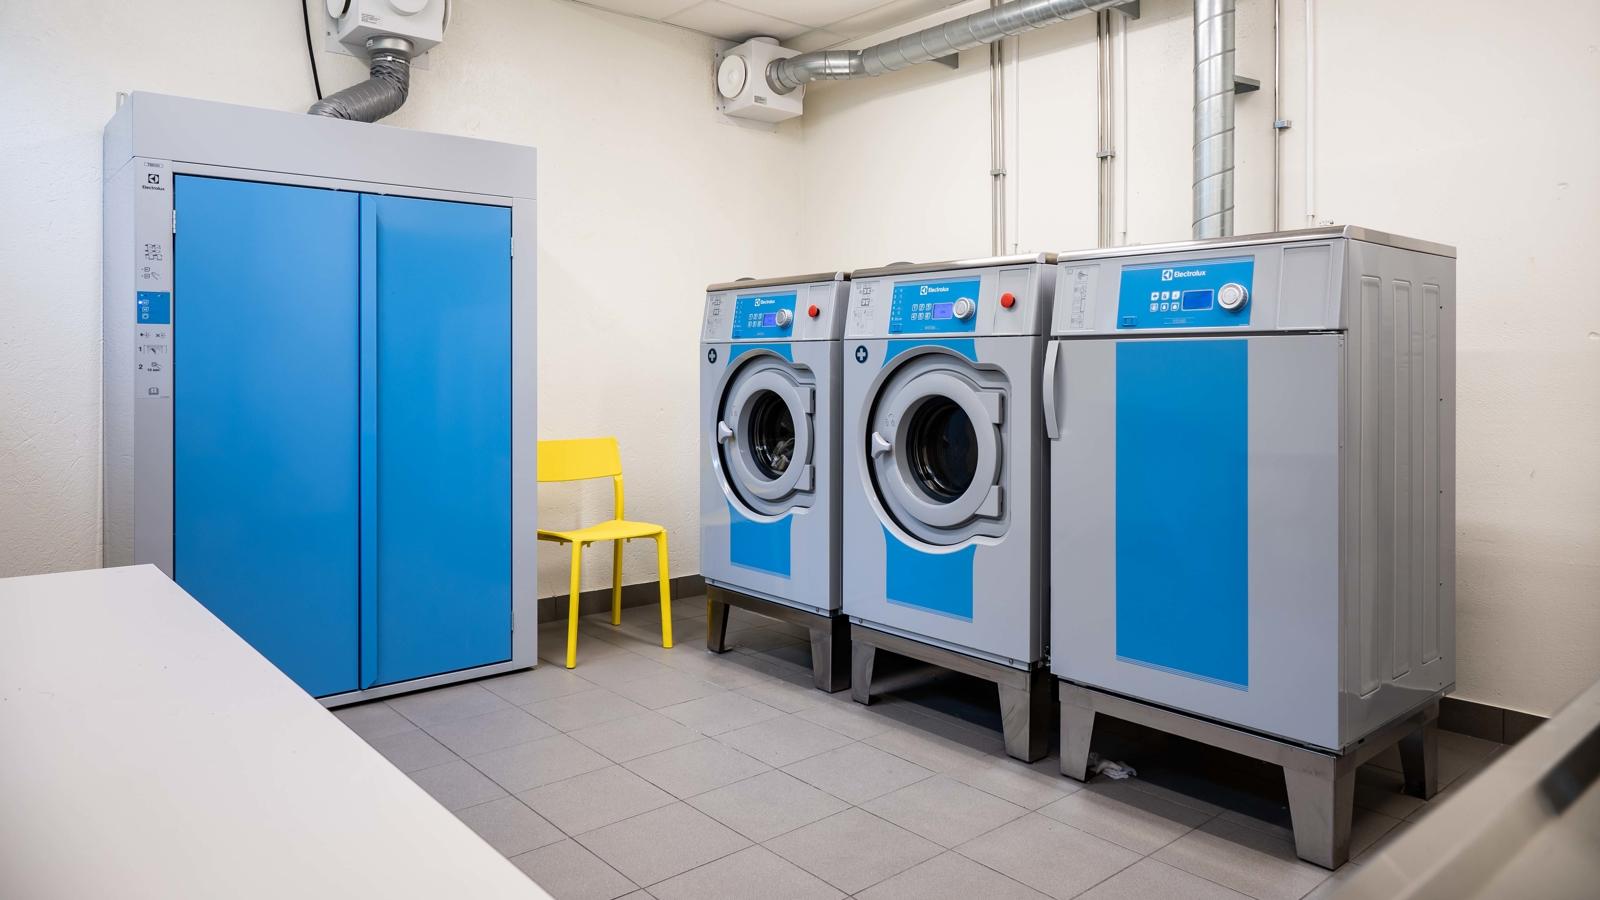 Tvättstuga, med två tvättmaskiner, en torktumlare och ett torkskåp, alla är ljusblå. Mellan tvättmaskinerna och torkskåpet står en klargul stol. 